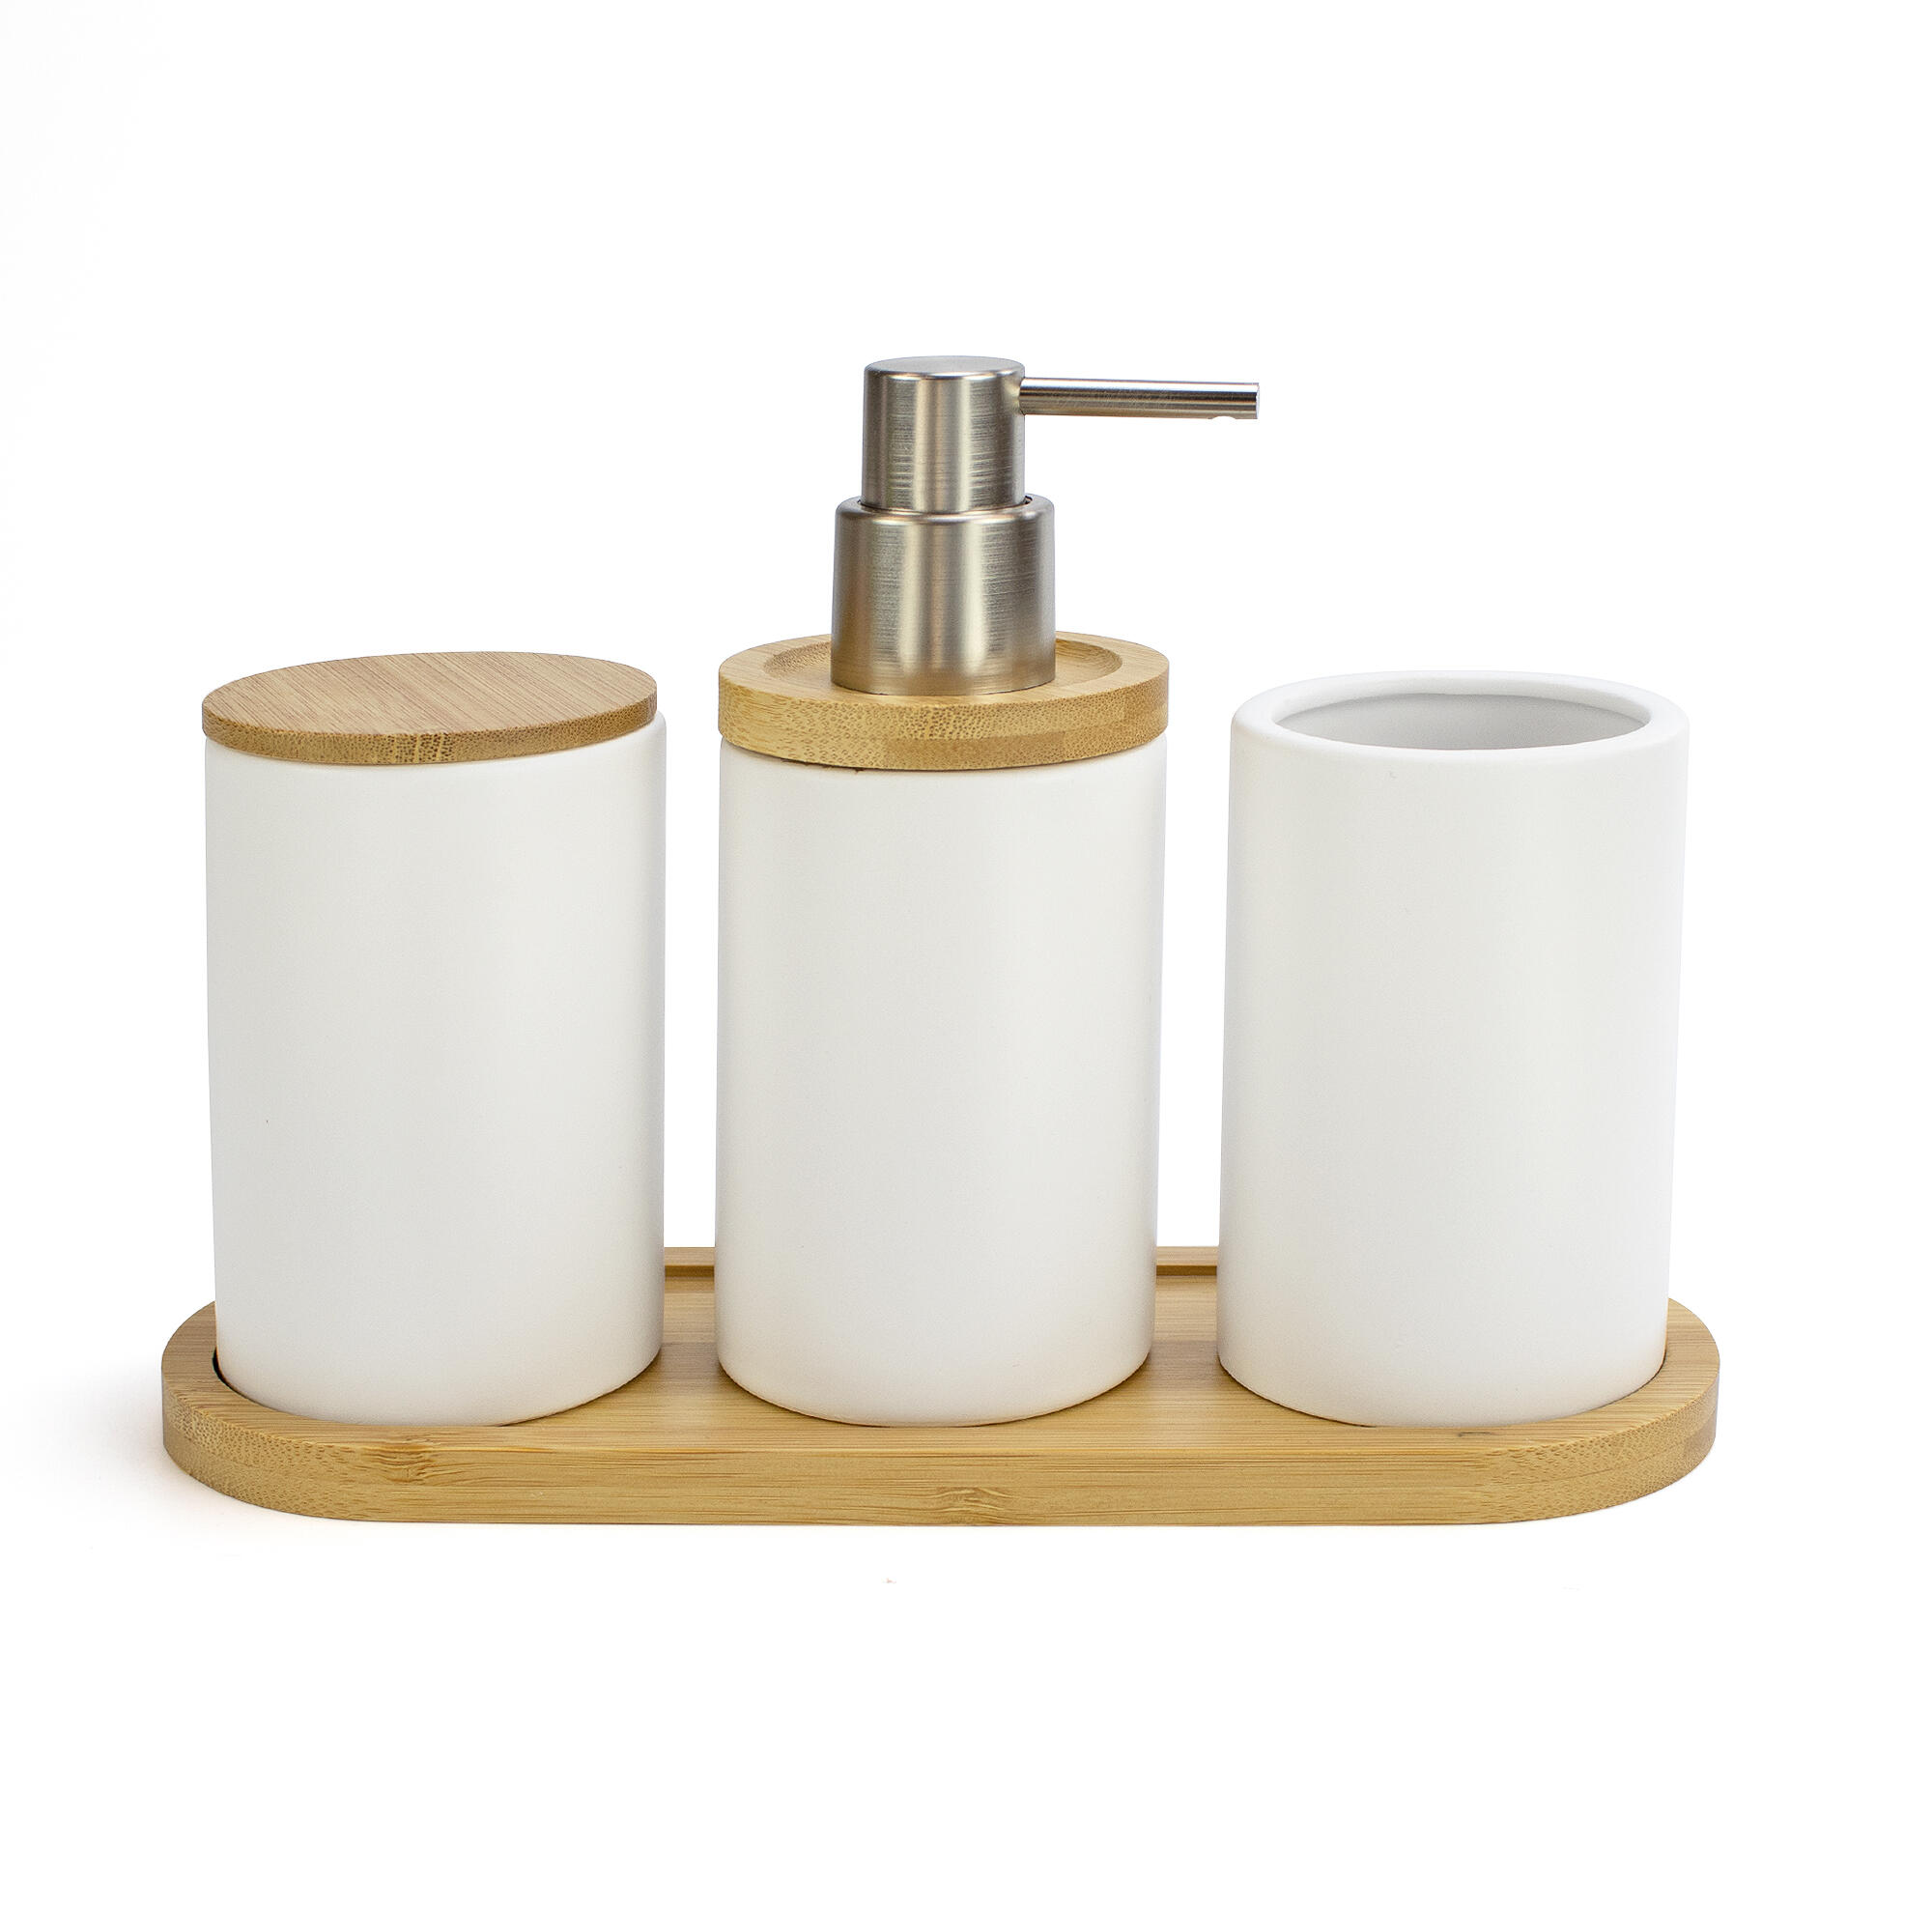 Accesorios para el baño - Dosificador jabón pared cuadrado Sanibaño